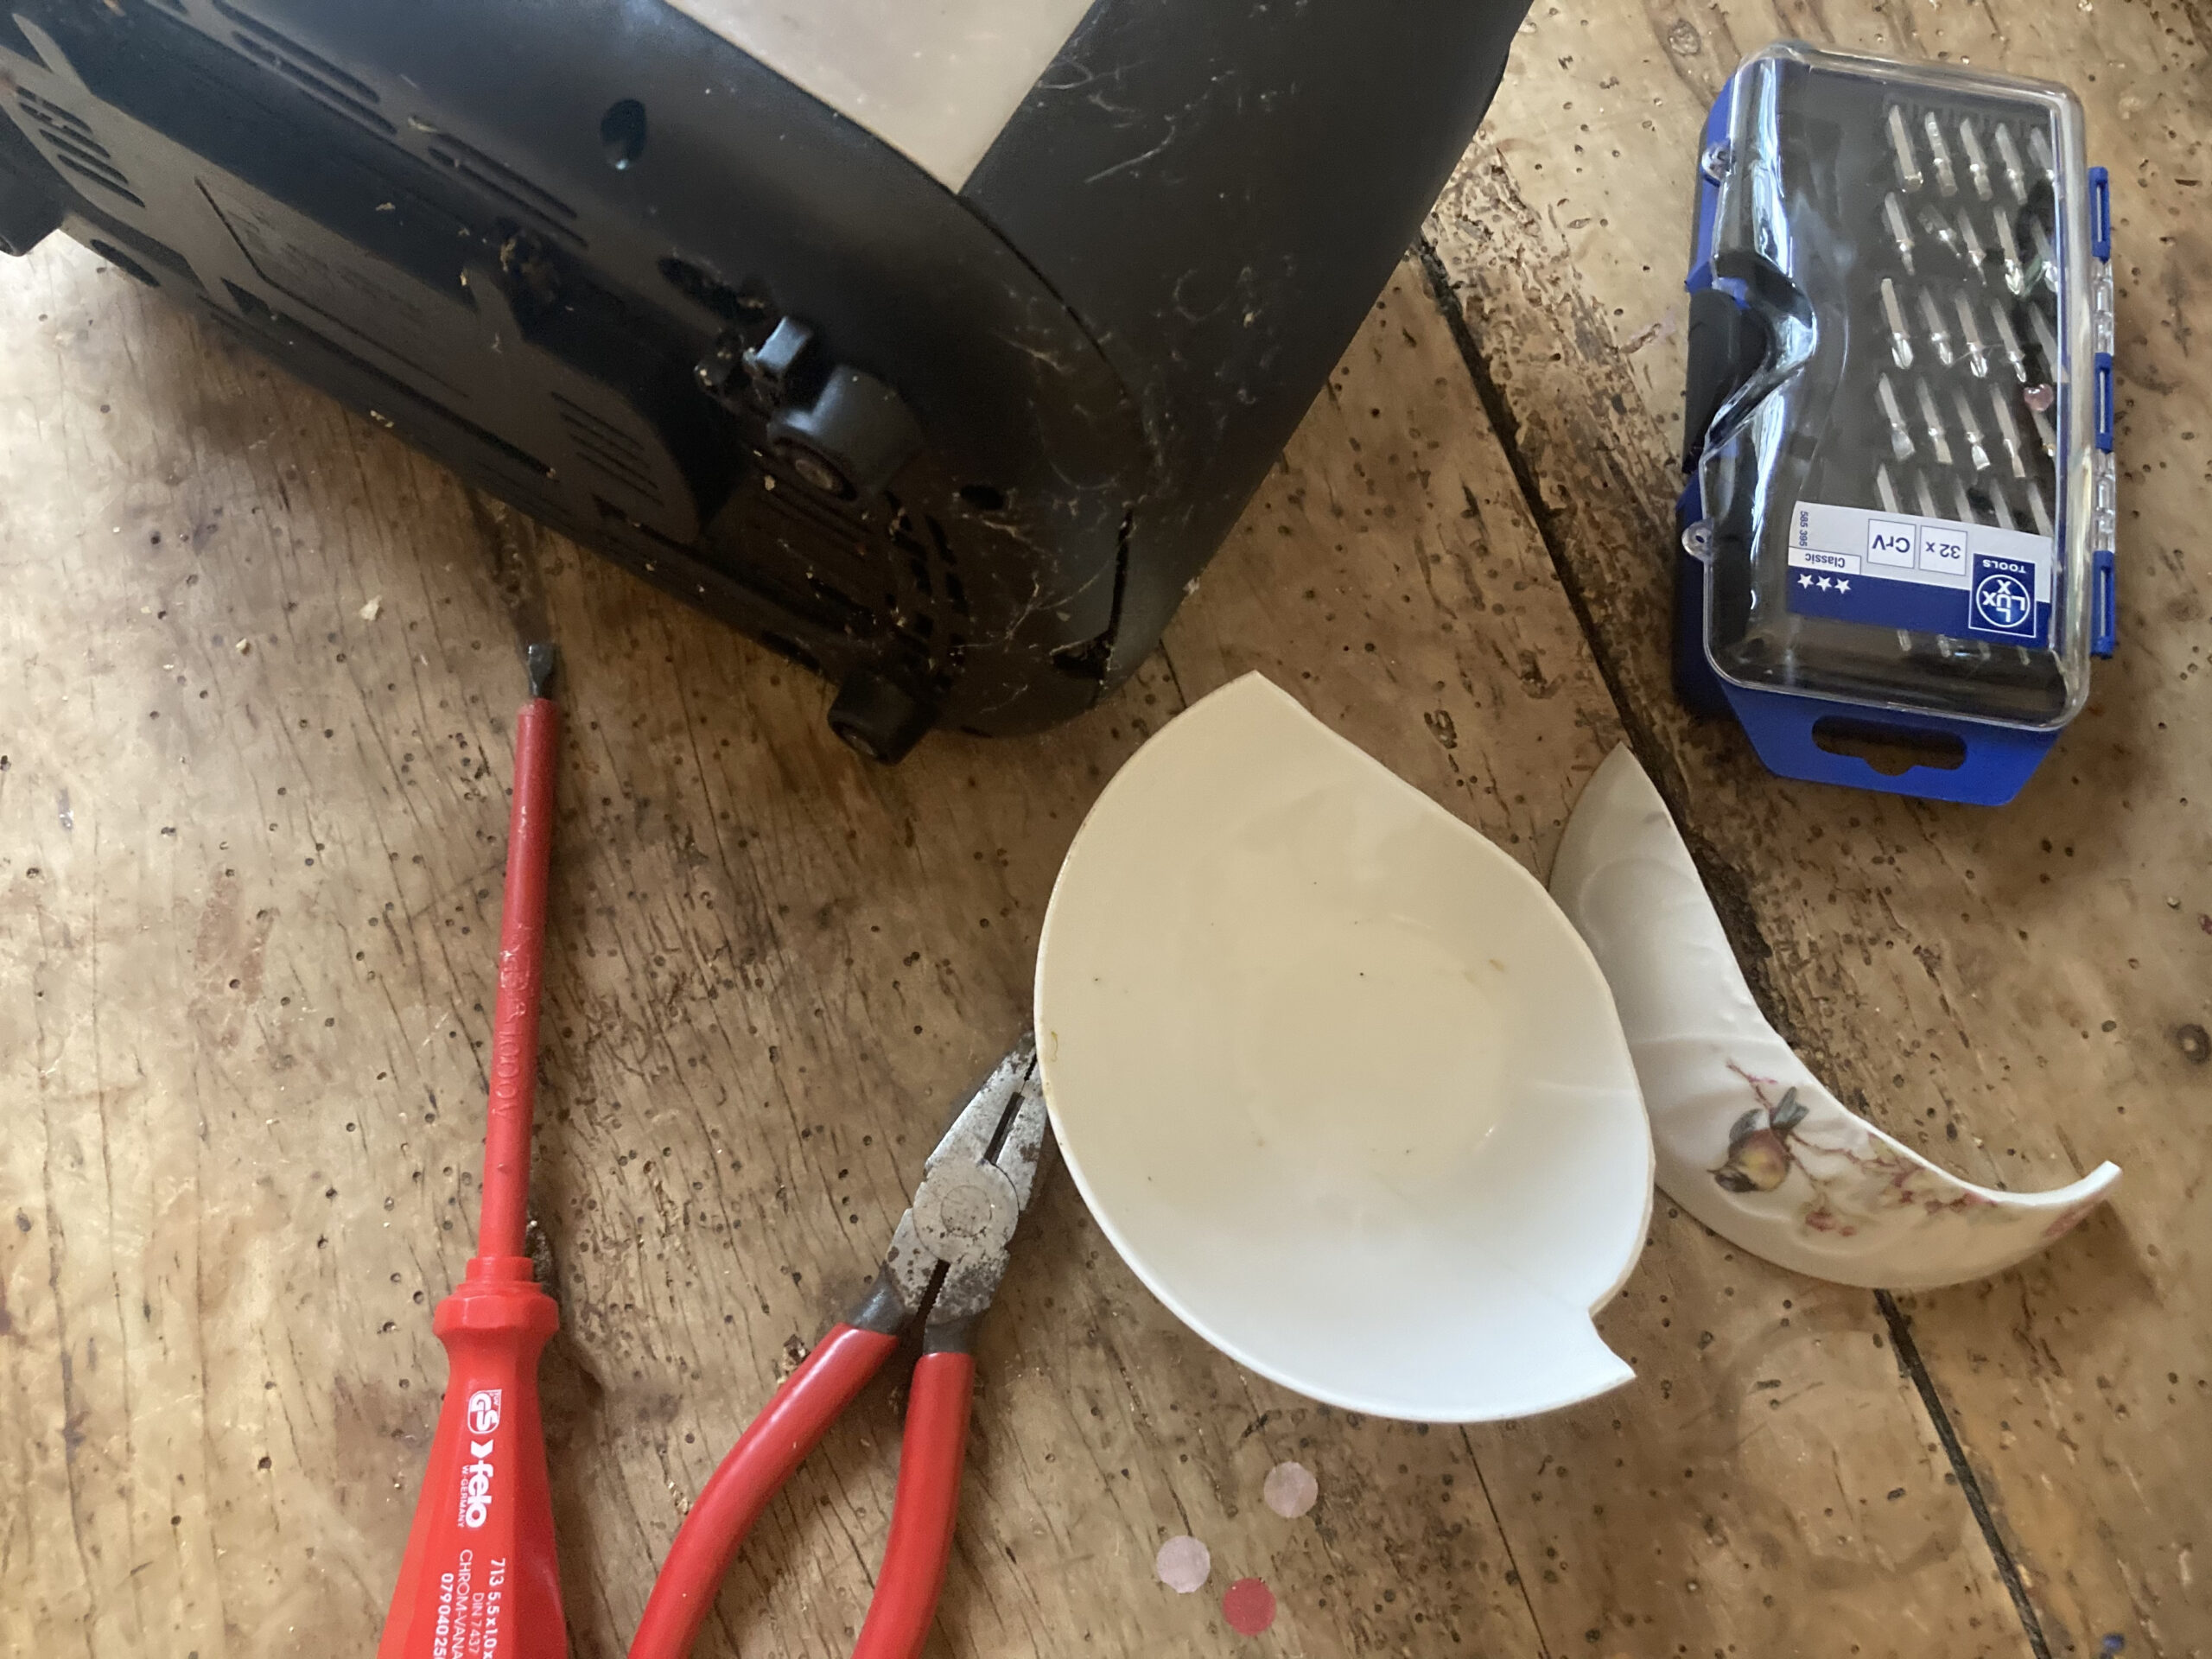 Das Bild zeigt einen Toaster, der auf einem Tisch auf der Seite liegt. Daneben liegt ein Schraubenzieher und eine Zange. Es ist ein Symbolbild für Repair Cafés.